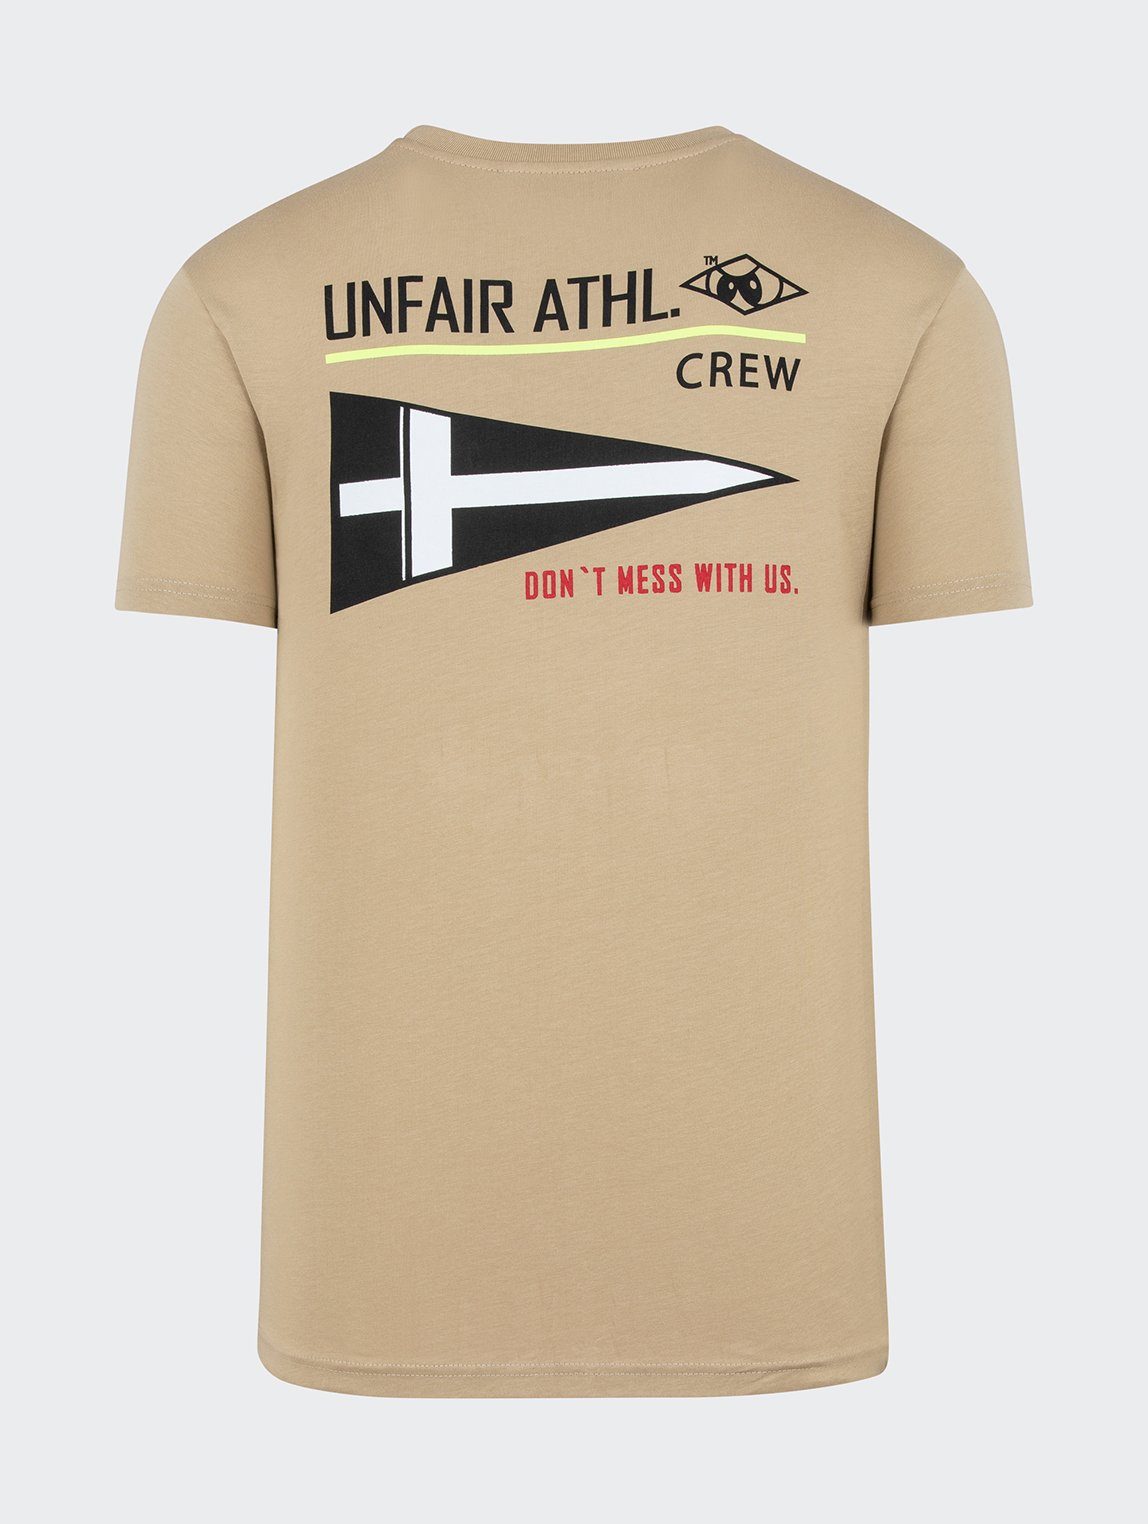 Unfair Unfair Unfair T-Shirt Herren Sailing Adult T-Shirt Athletics Athletics